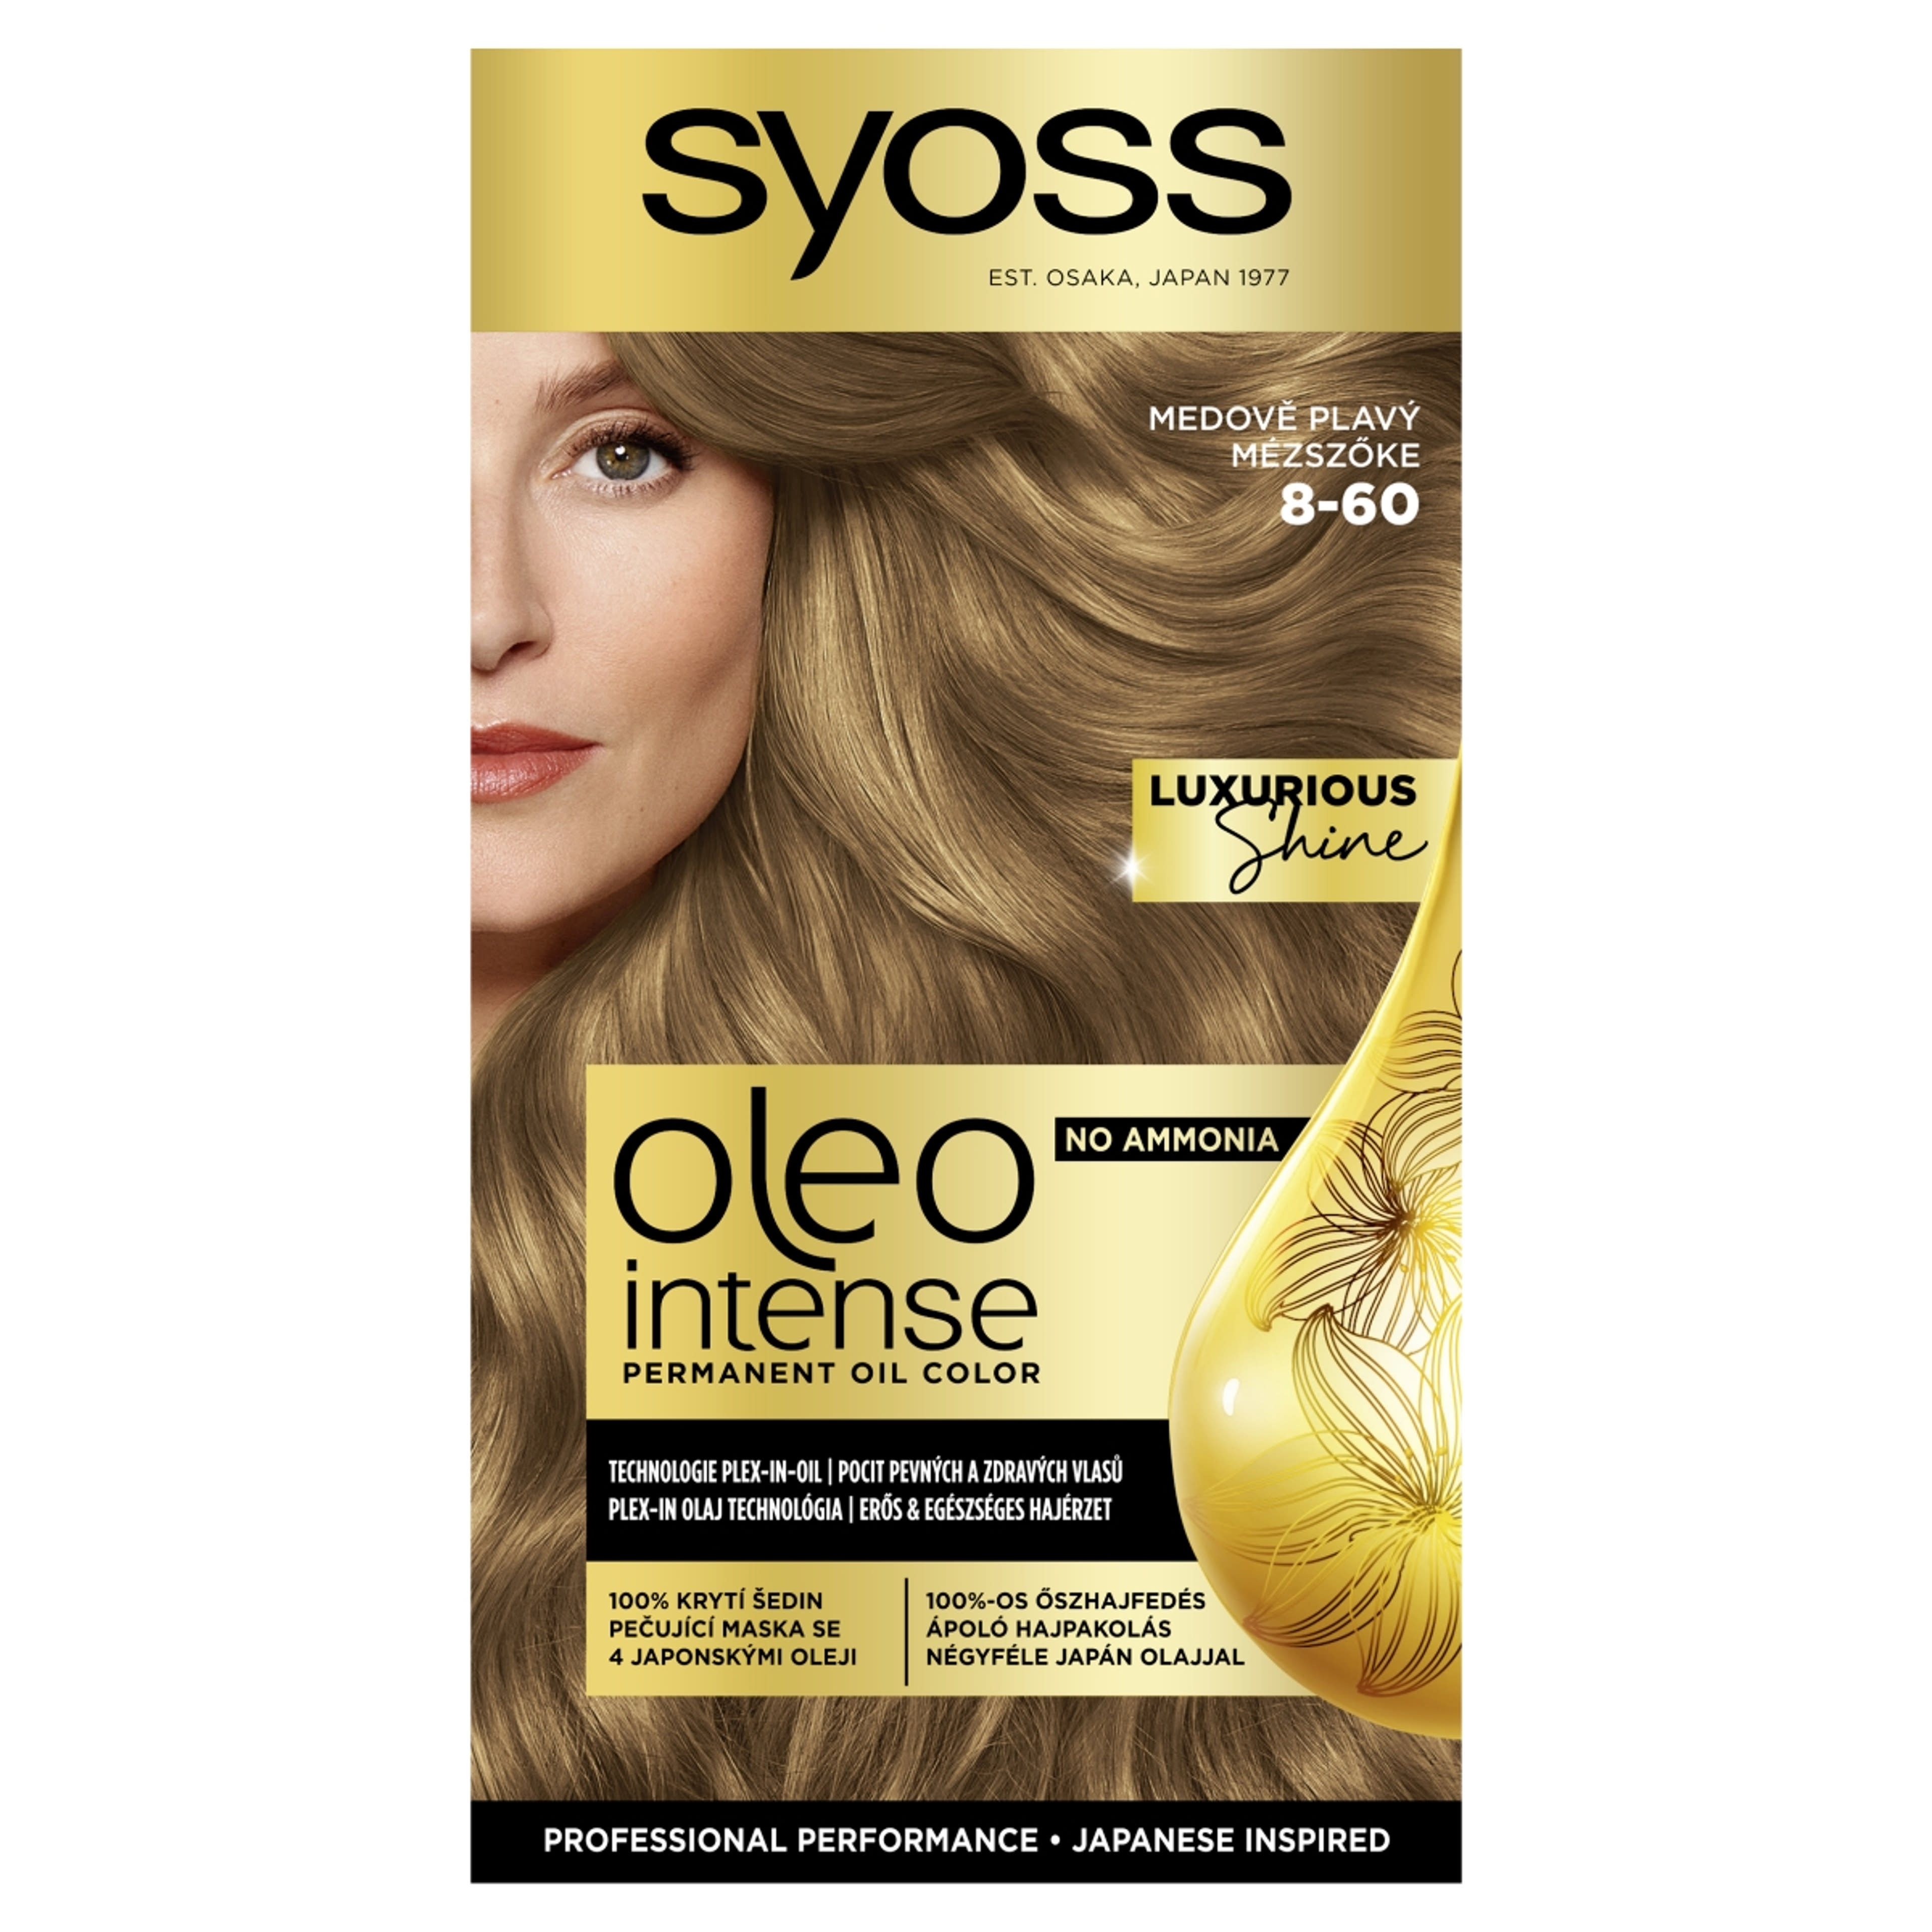 Syoss Oleo Intense tartós hajfesték 8-60 mézszőke - 1 db-1